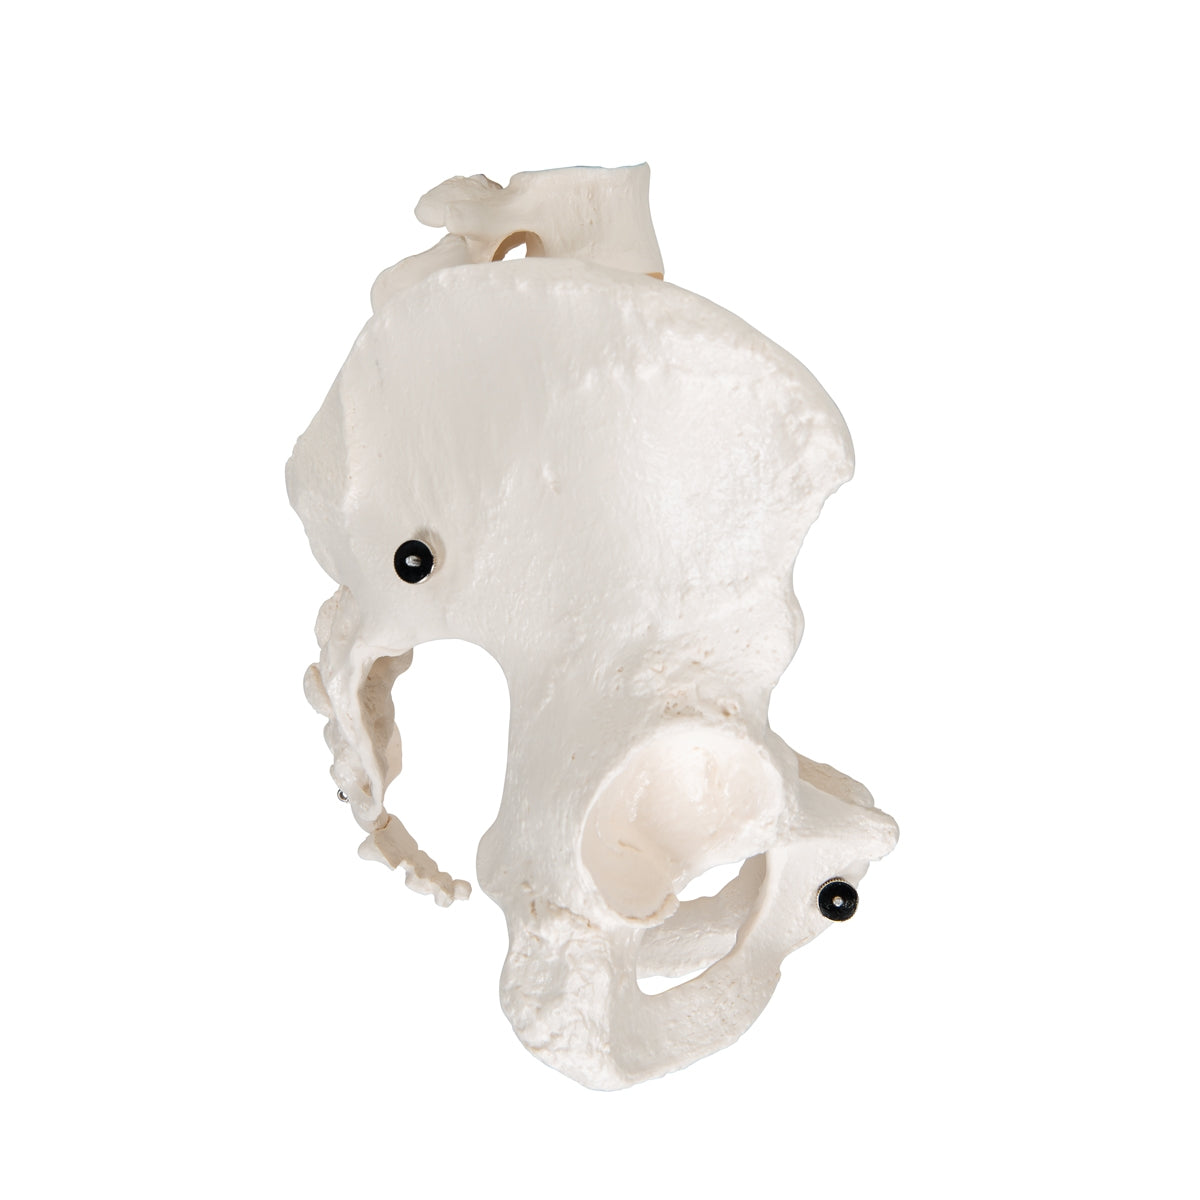 Human Female Pelvic Skeleton Model